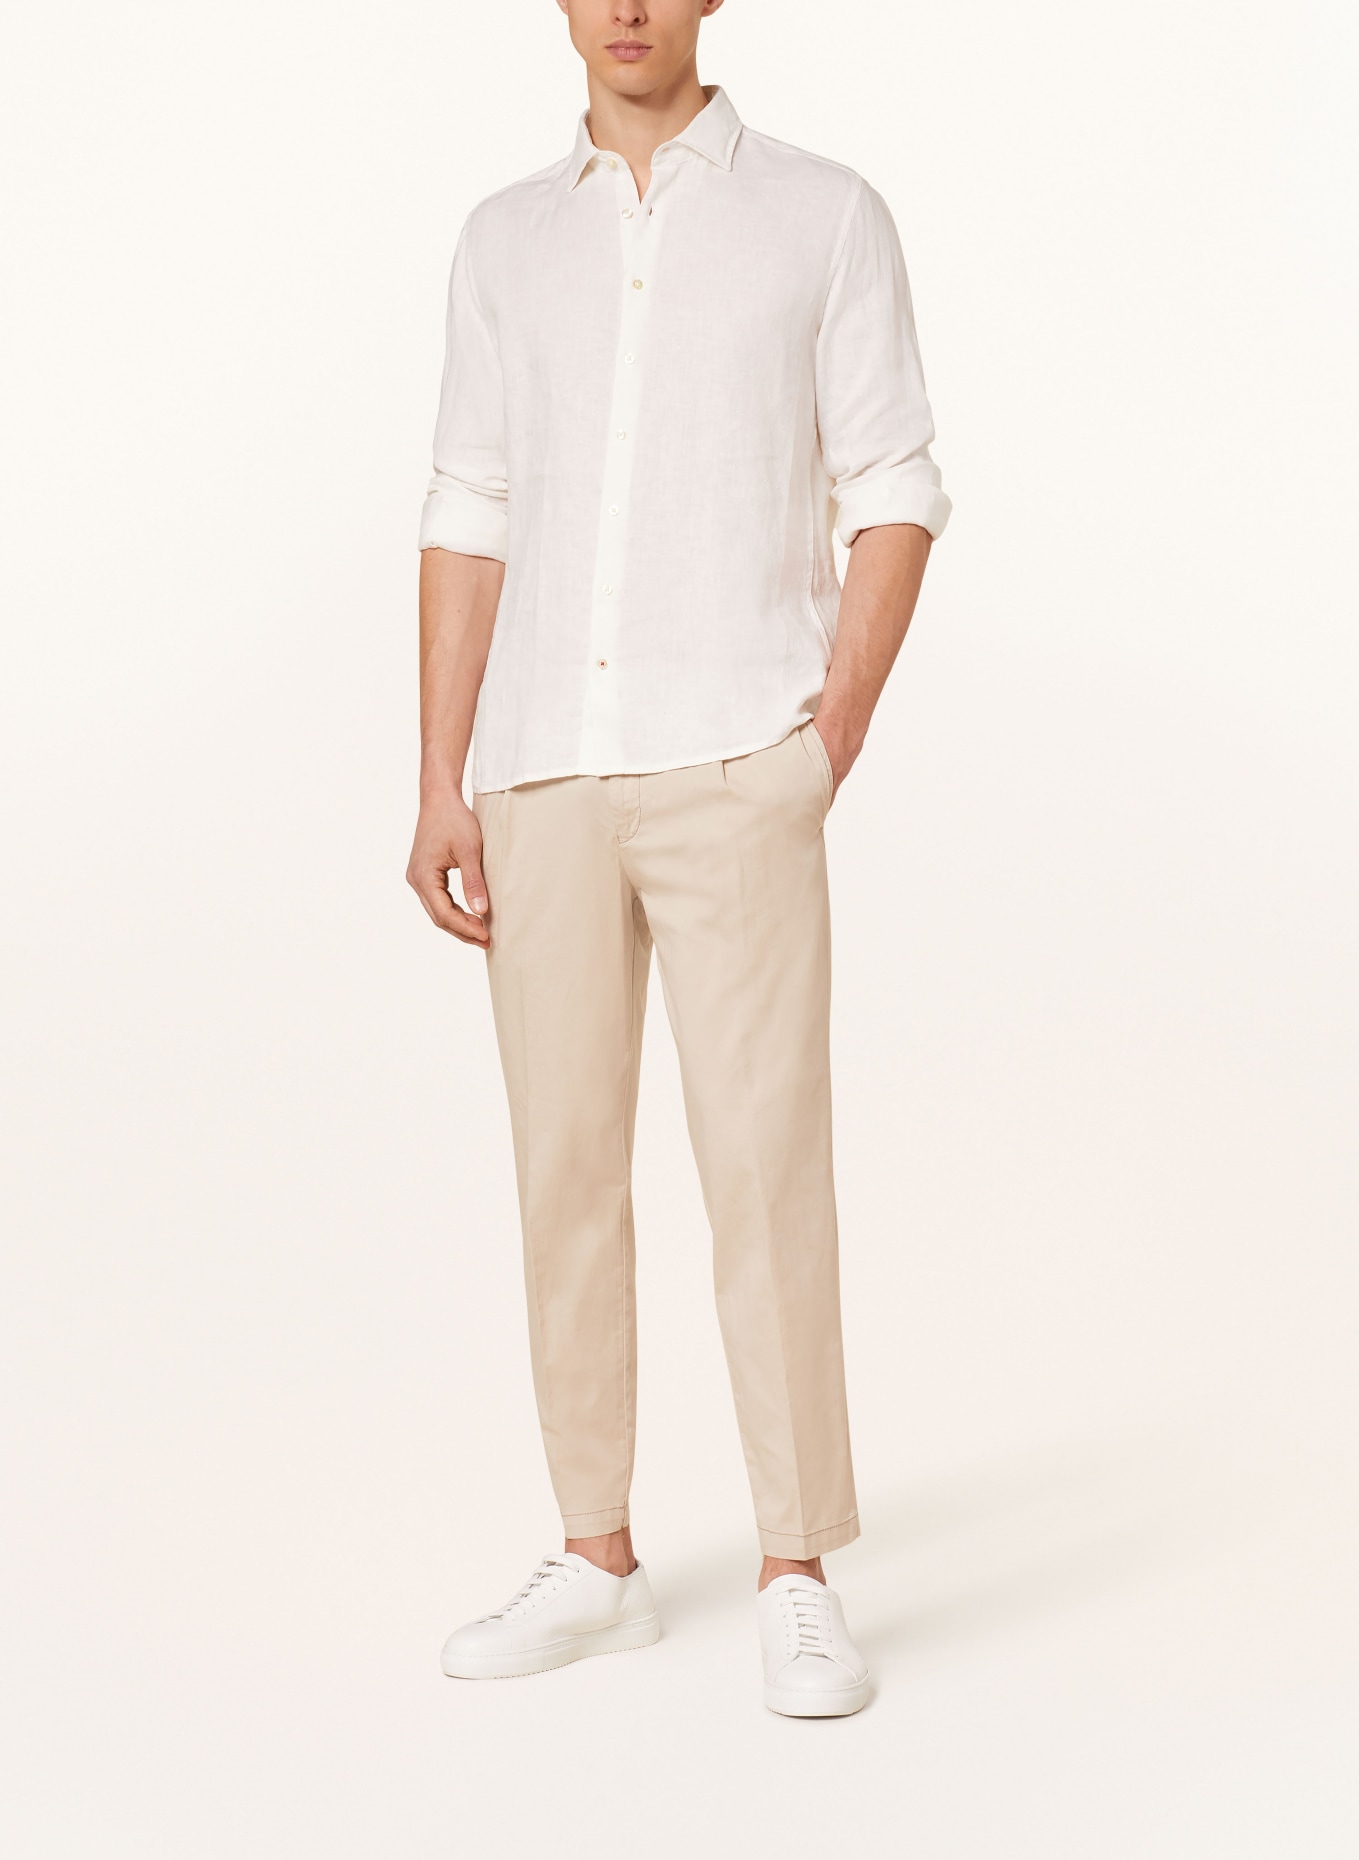 CINQUE Linen shirt CISTEVEN regular fit, Color: WHITE (Image 2)